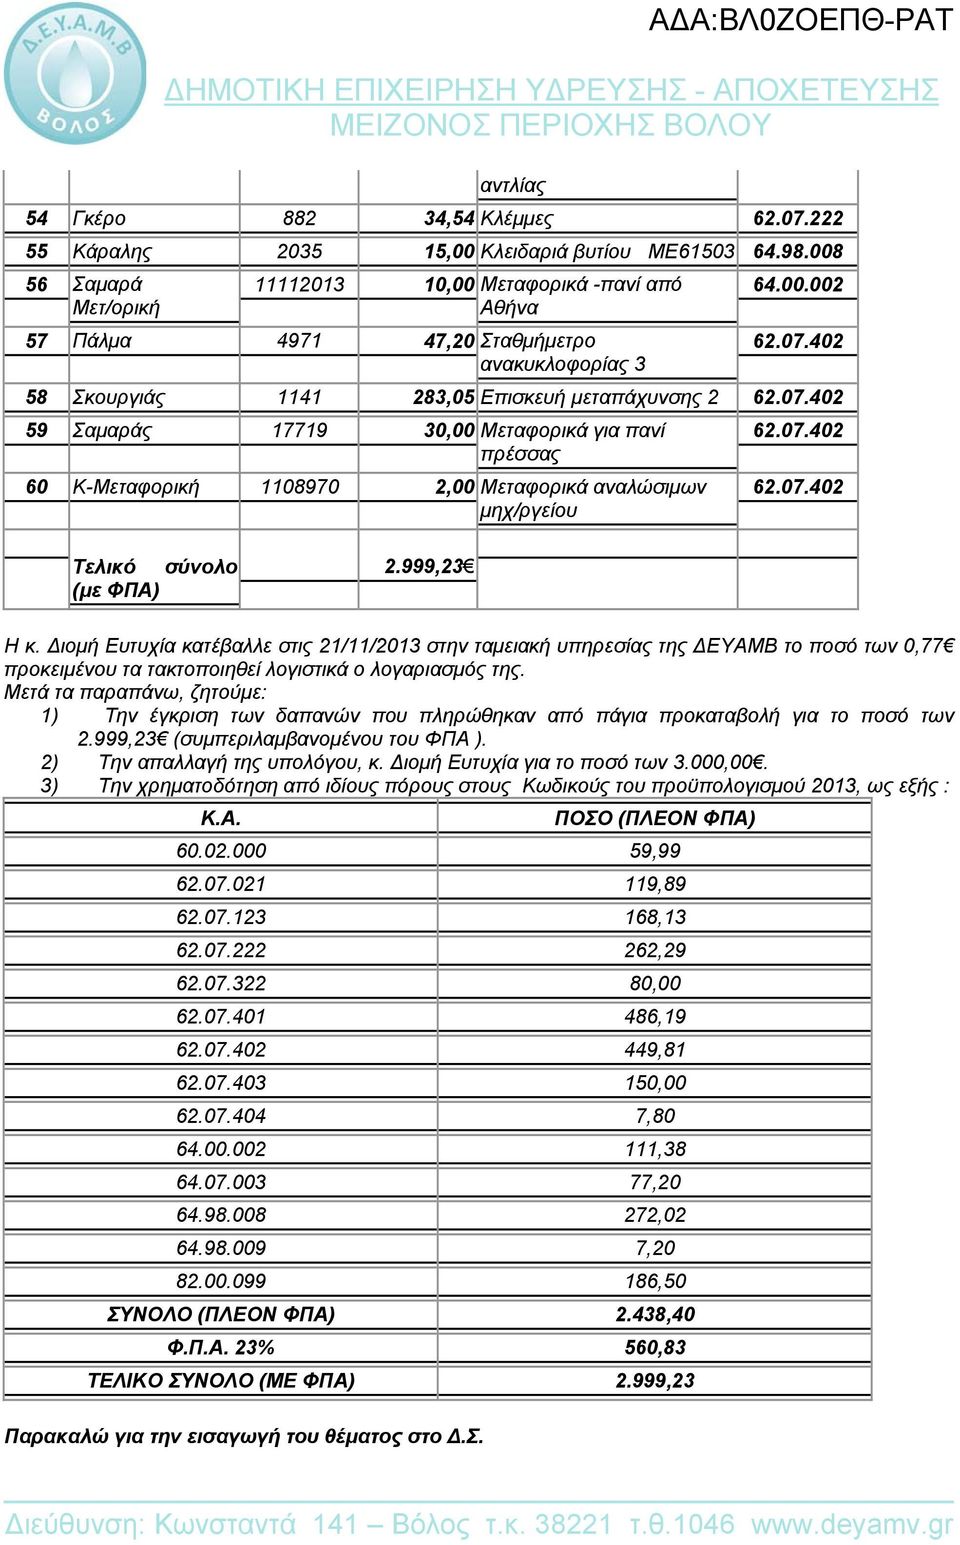 07.402 Τελικό σύνολο (με ΦΠΑ) 2.999,23 Η κ. Διομή Ευτυχία κατέβαλλε στις 21/11/2013 στην ταμειακή υπηρεσίας της ΔΕΥΑΜΒ το ποσό των 0,77 προκειμένου τα τακτοποιηθεί λογιστικά ο λογαριασμός της.